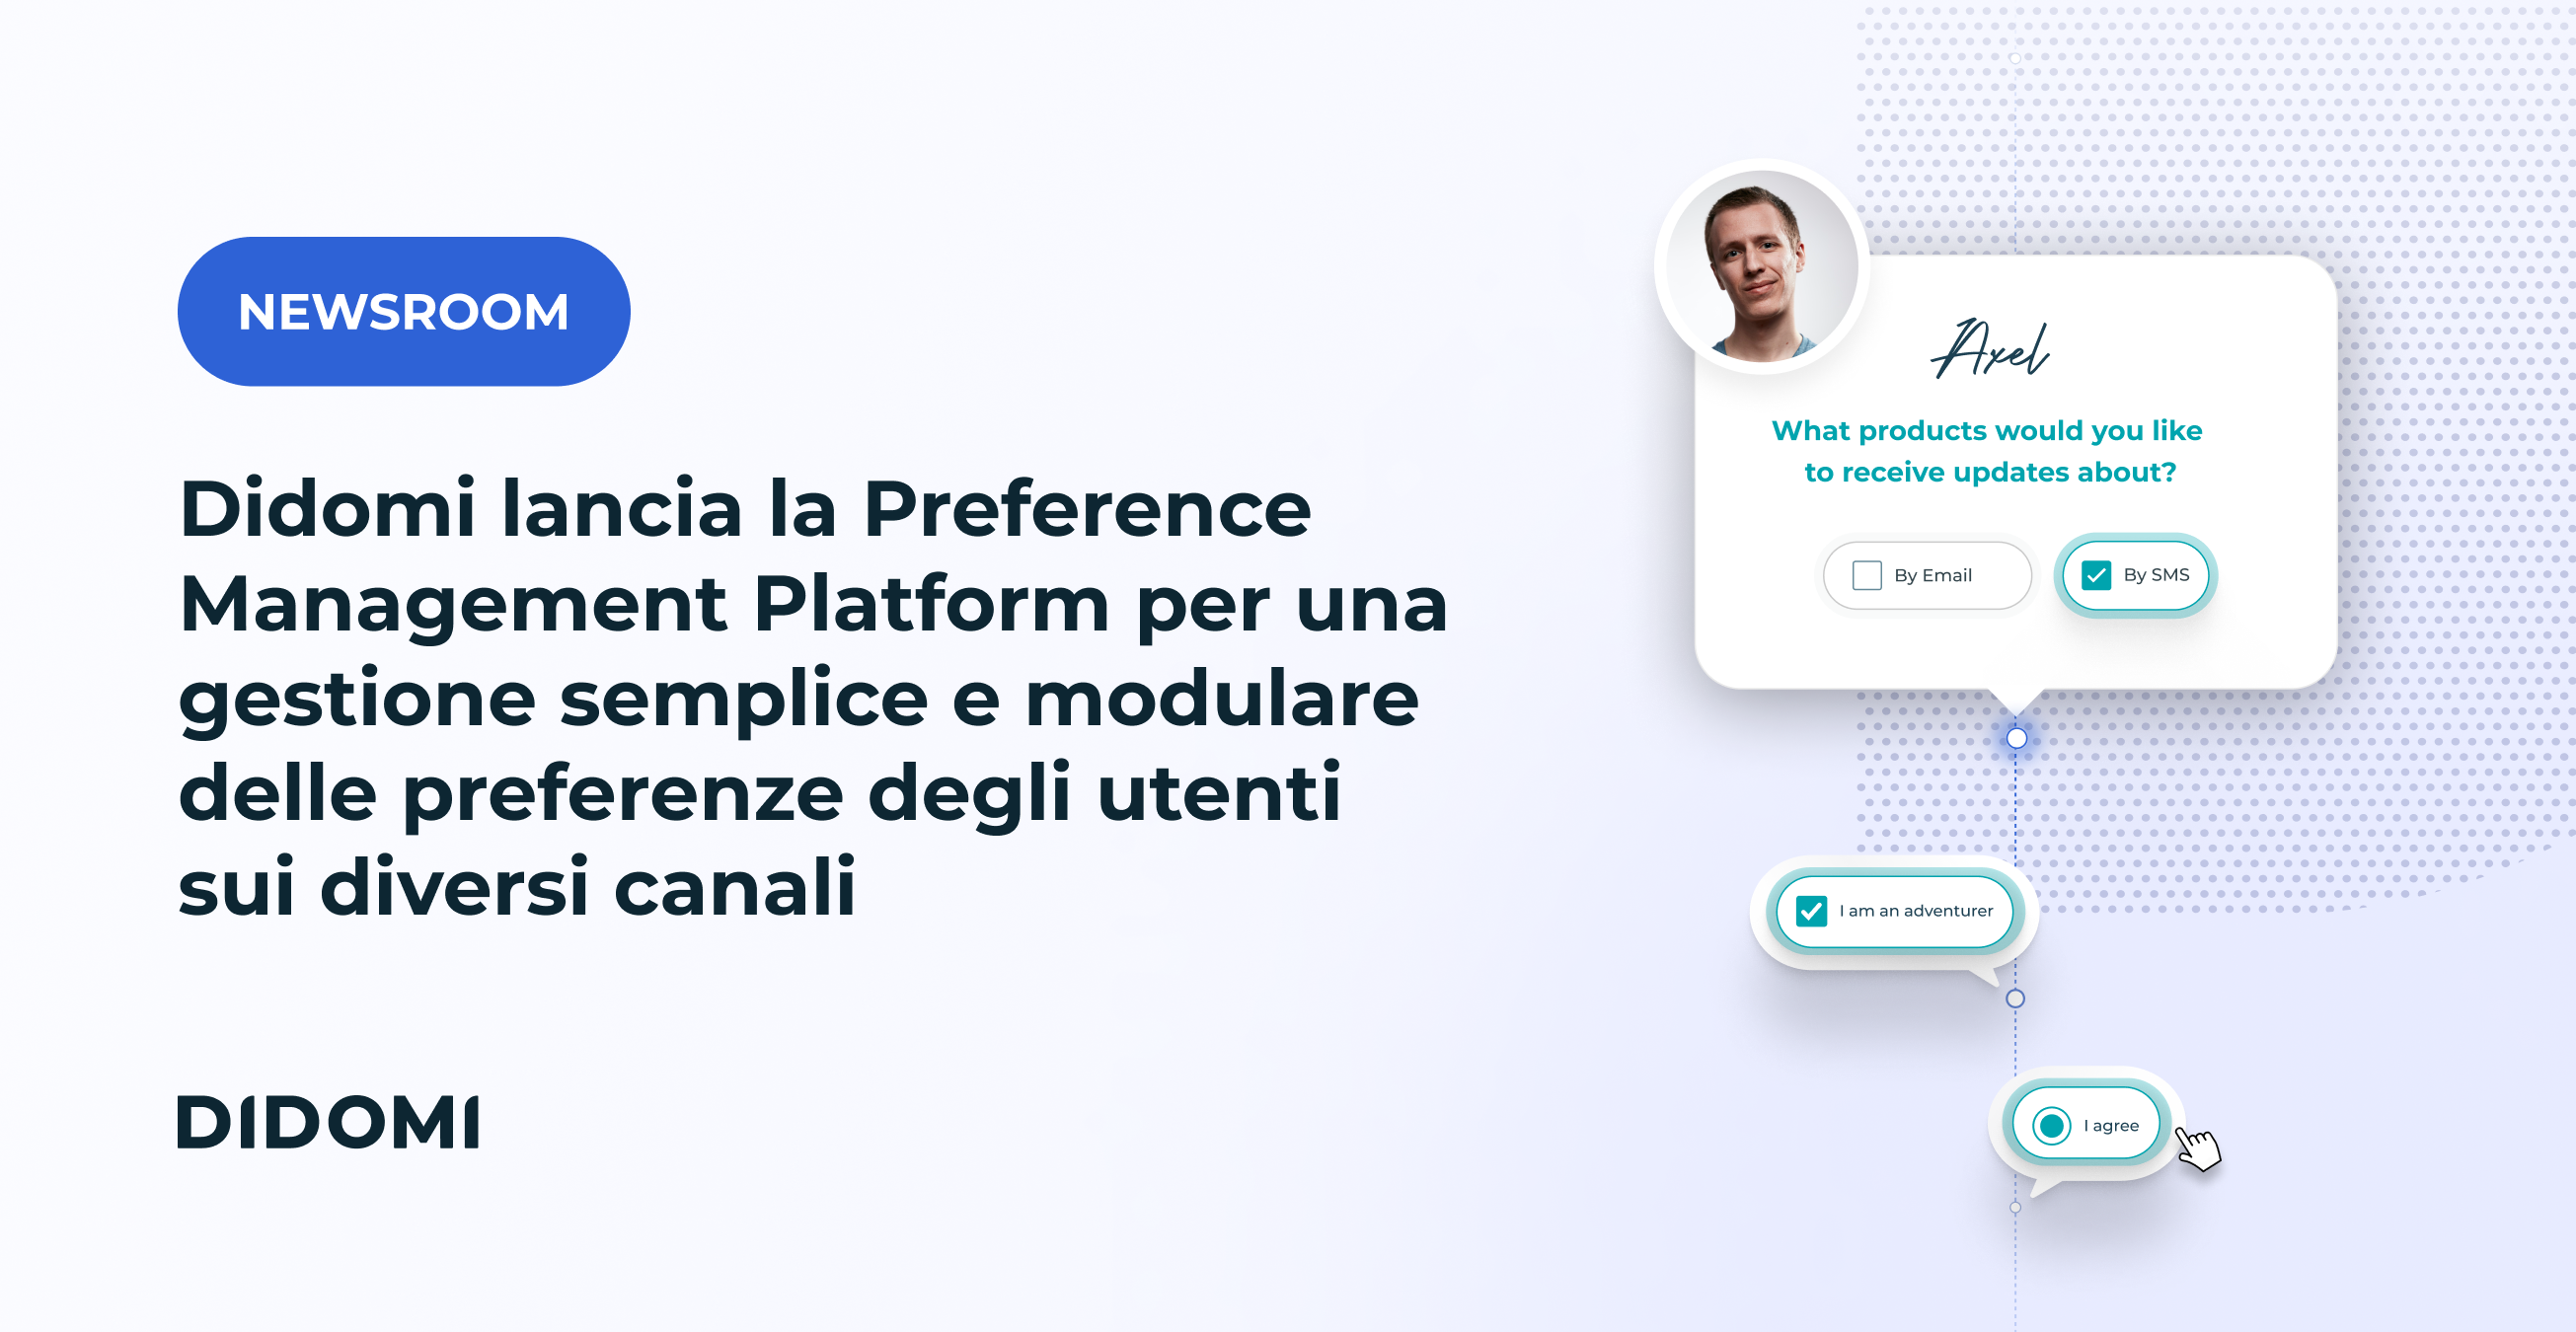 Didomi lancia la Preference Management Platform per una gestione semplice e modulare delle preferenze degli utenti sui diversi canali